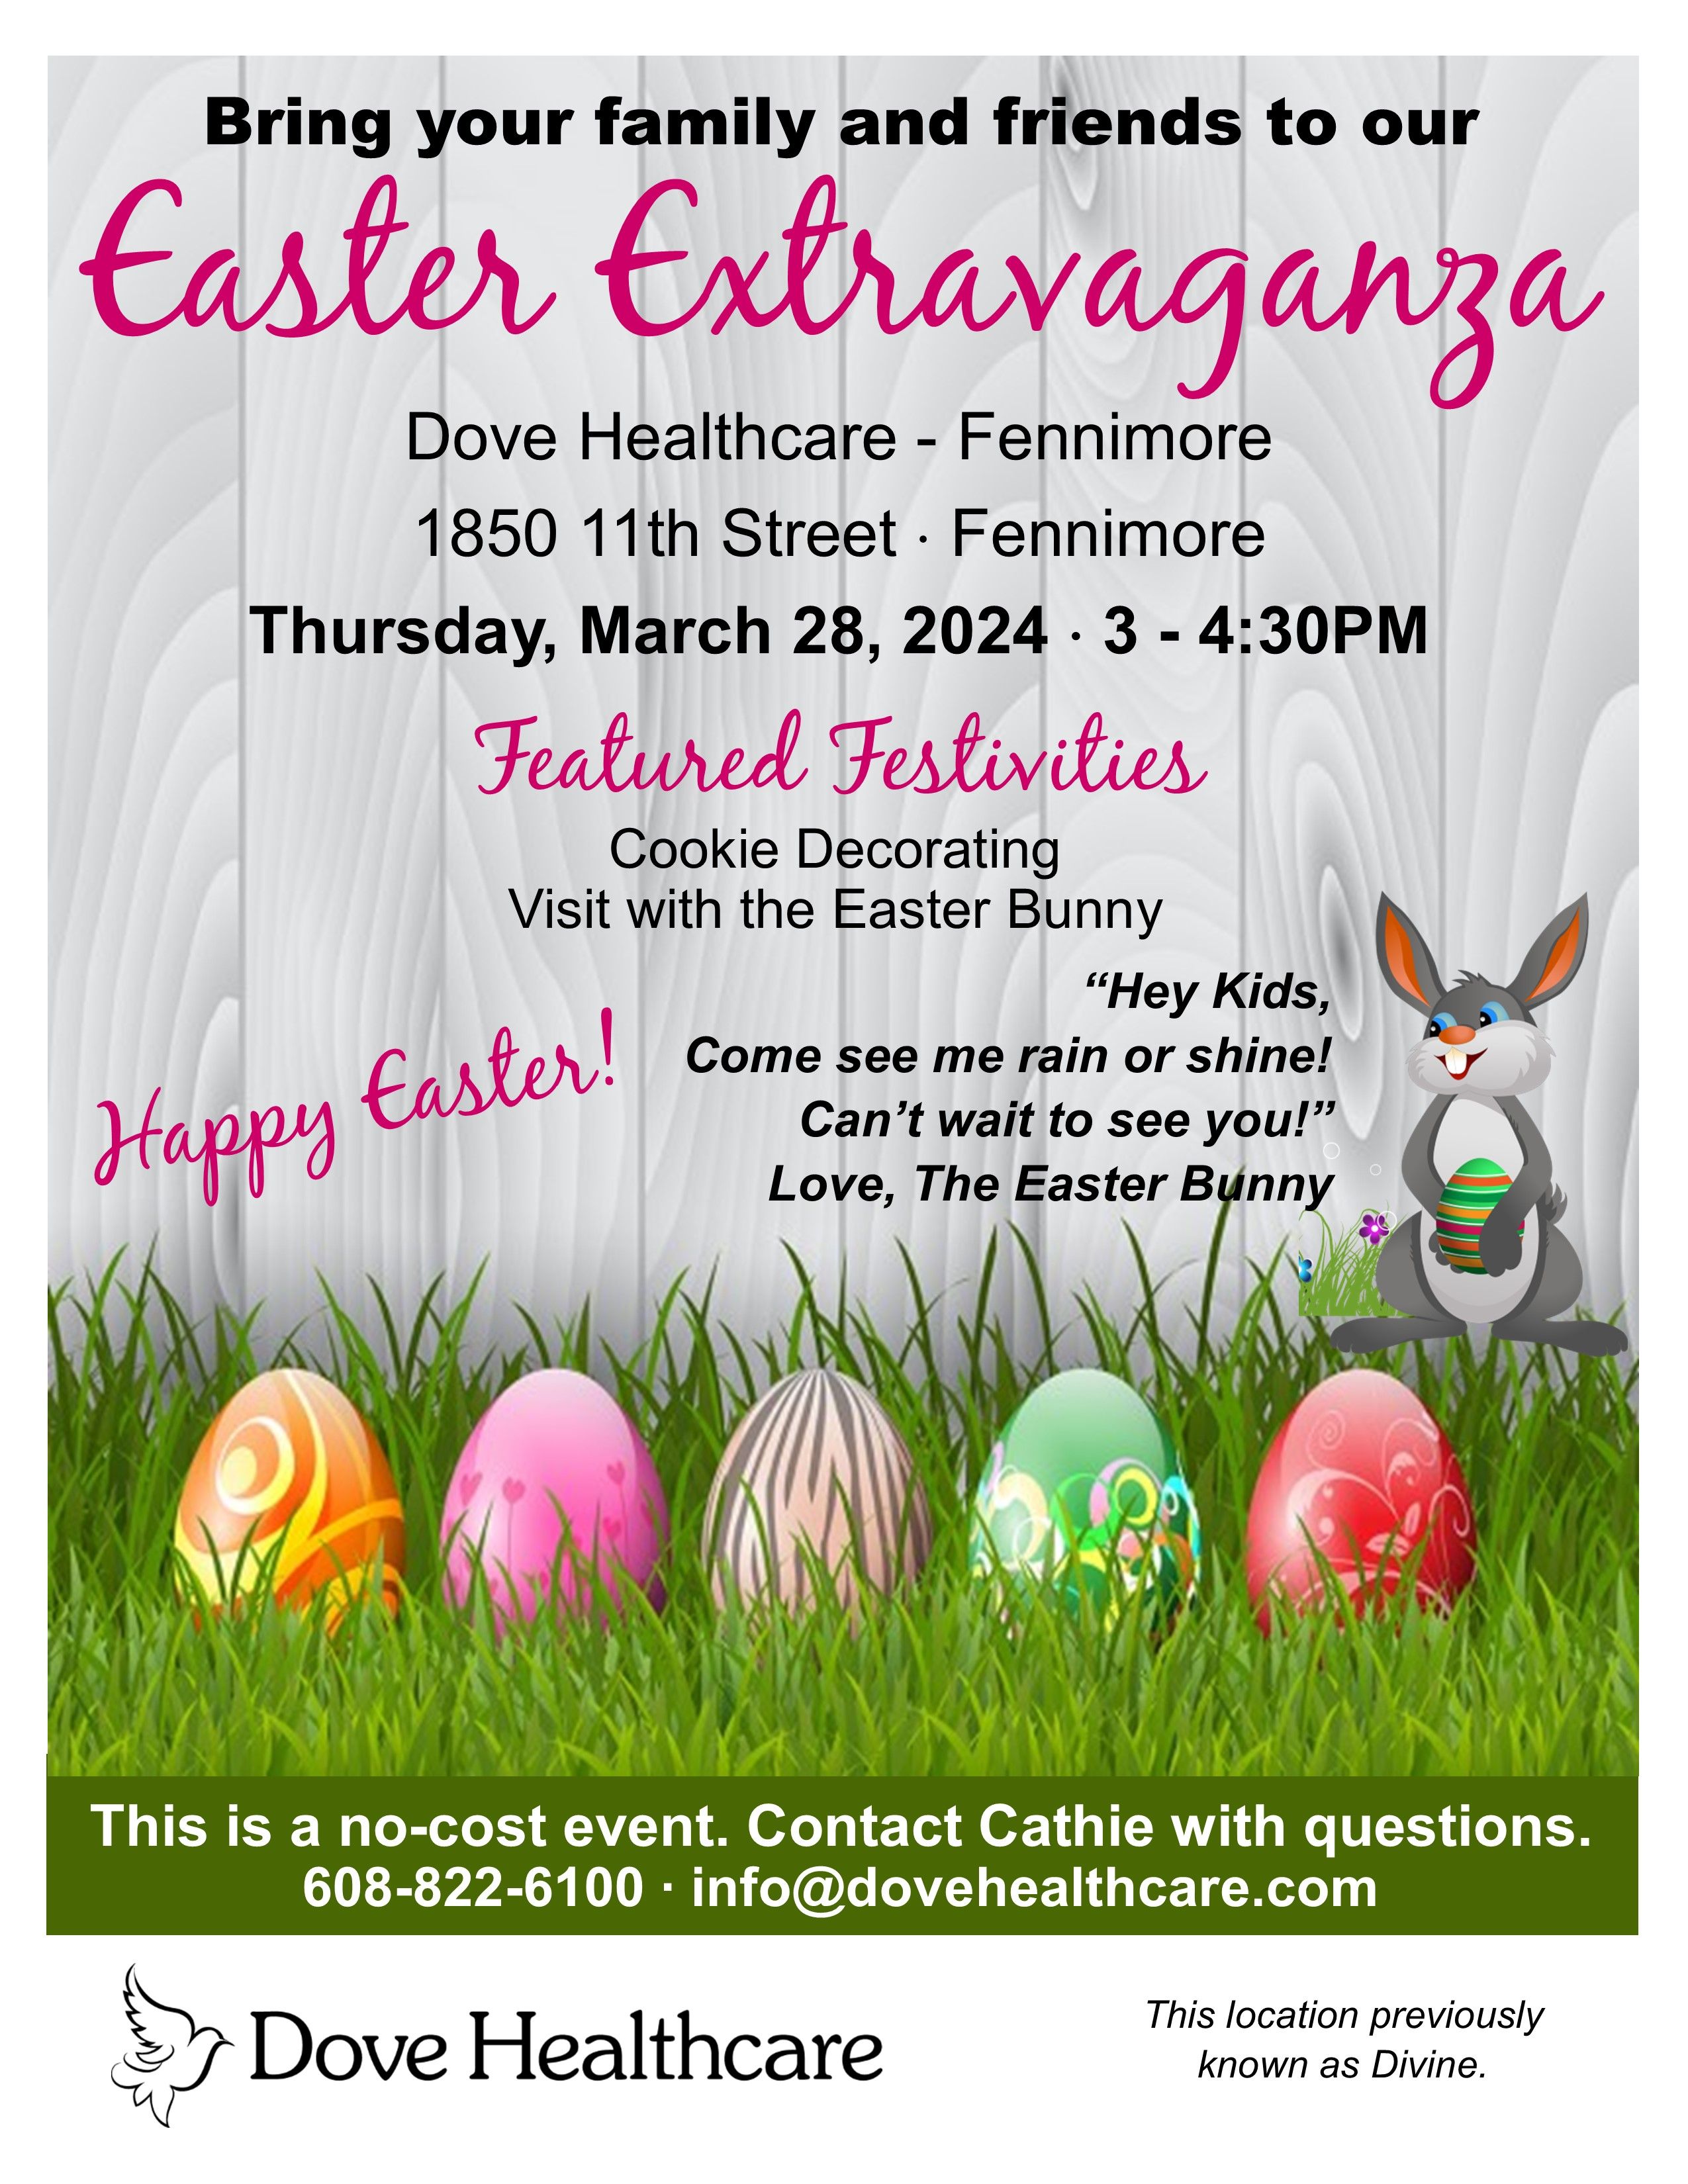 Easter Extravaganza in Fennimore